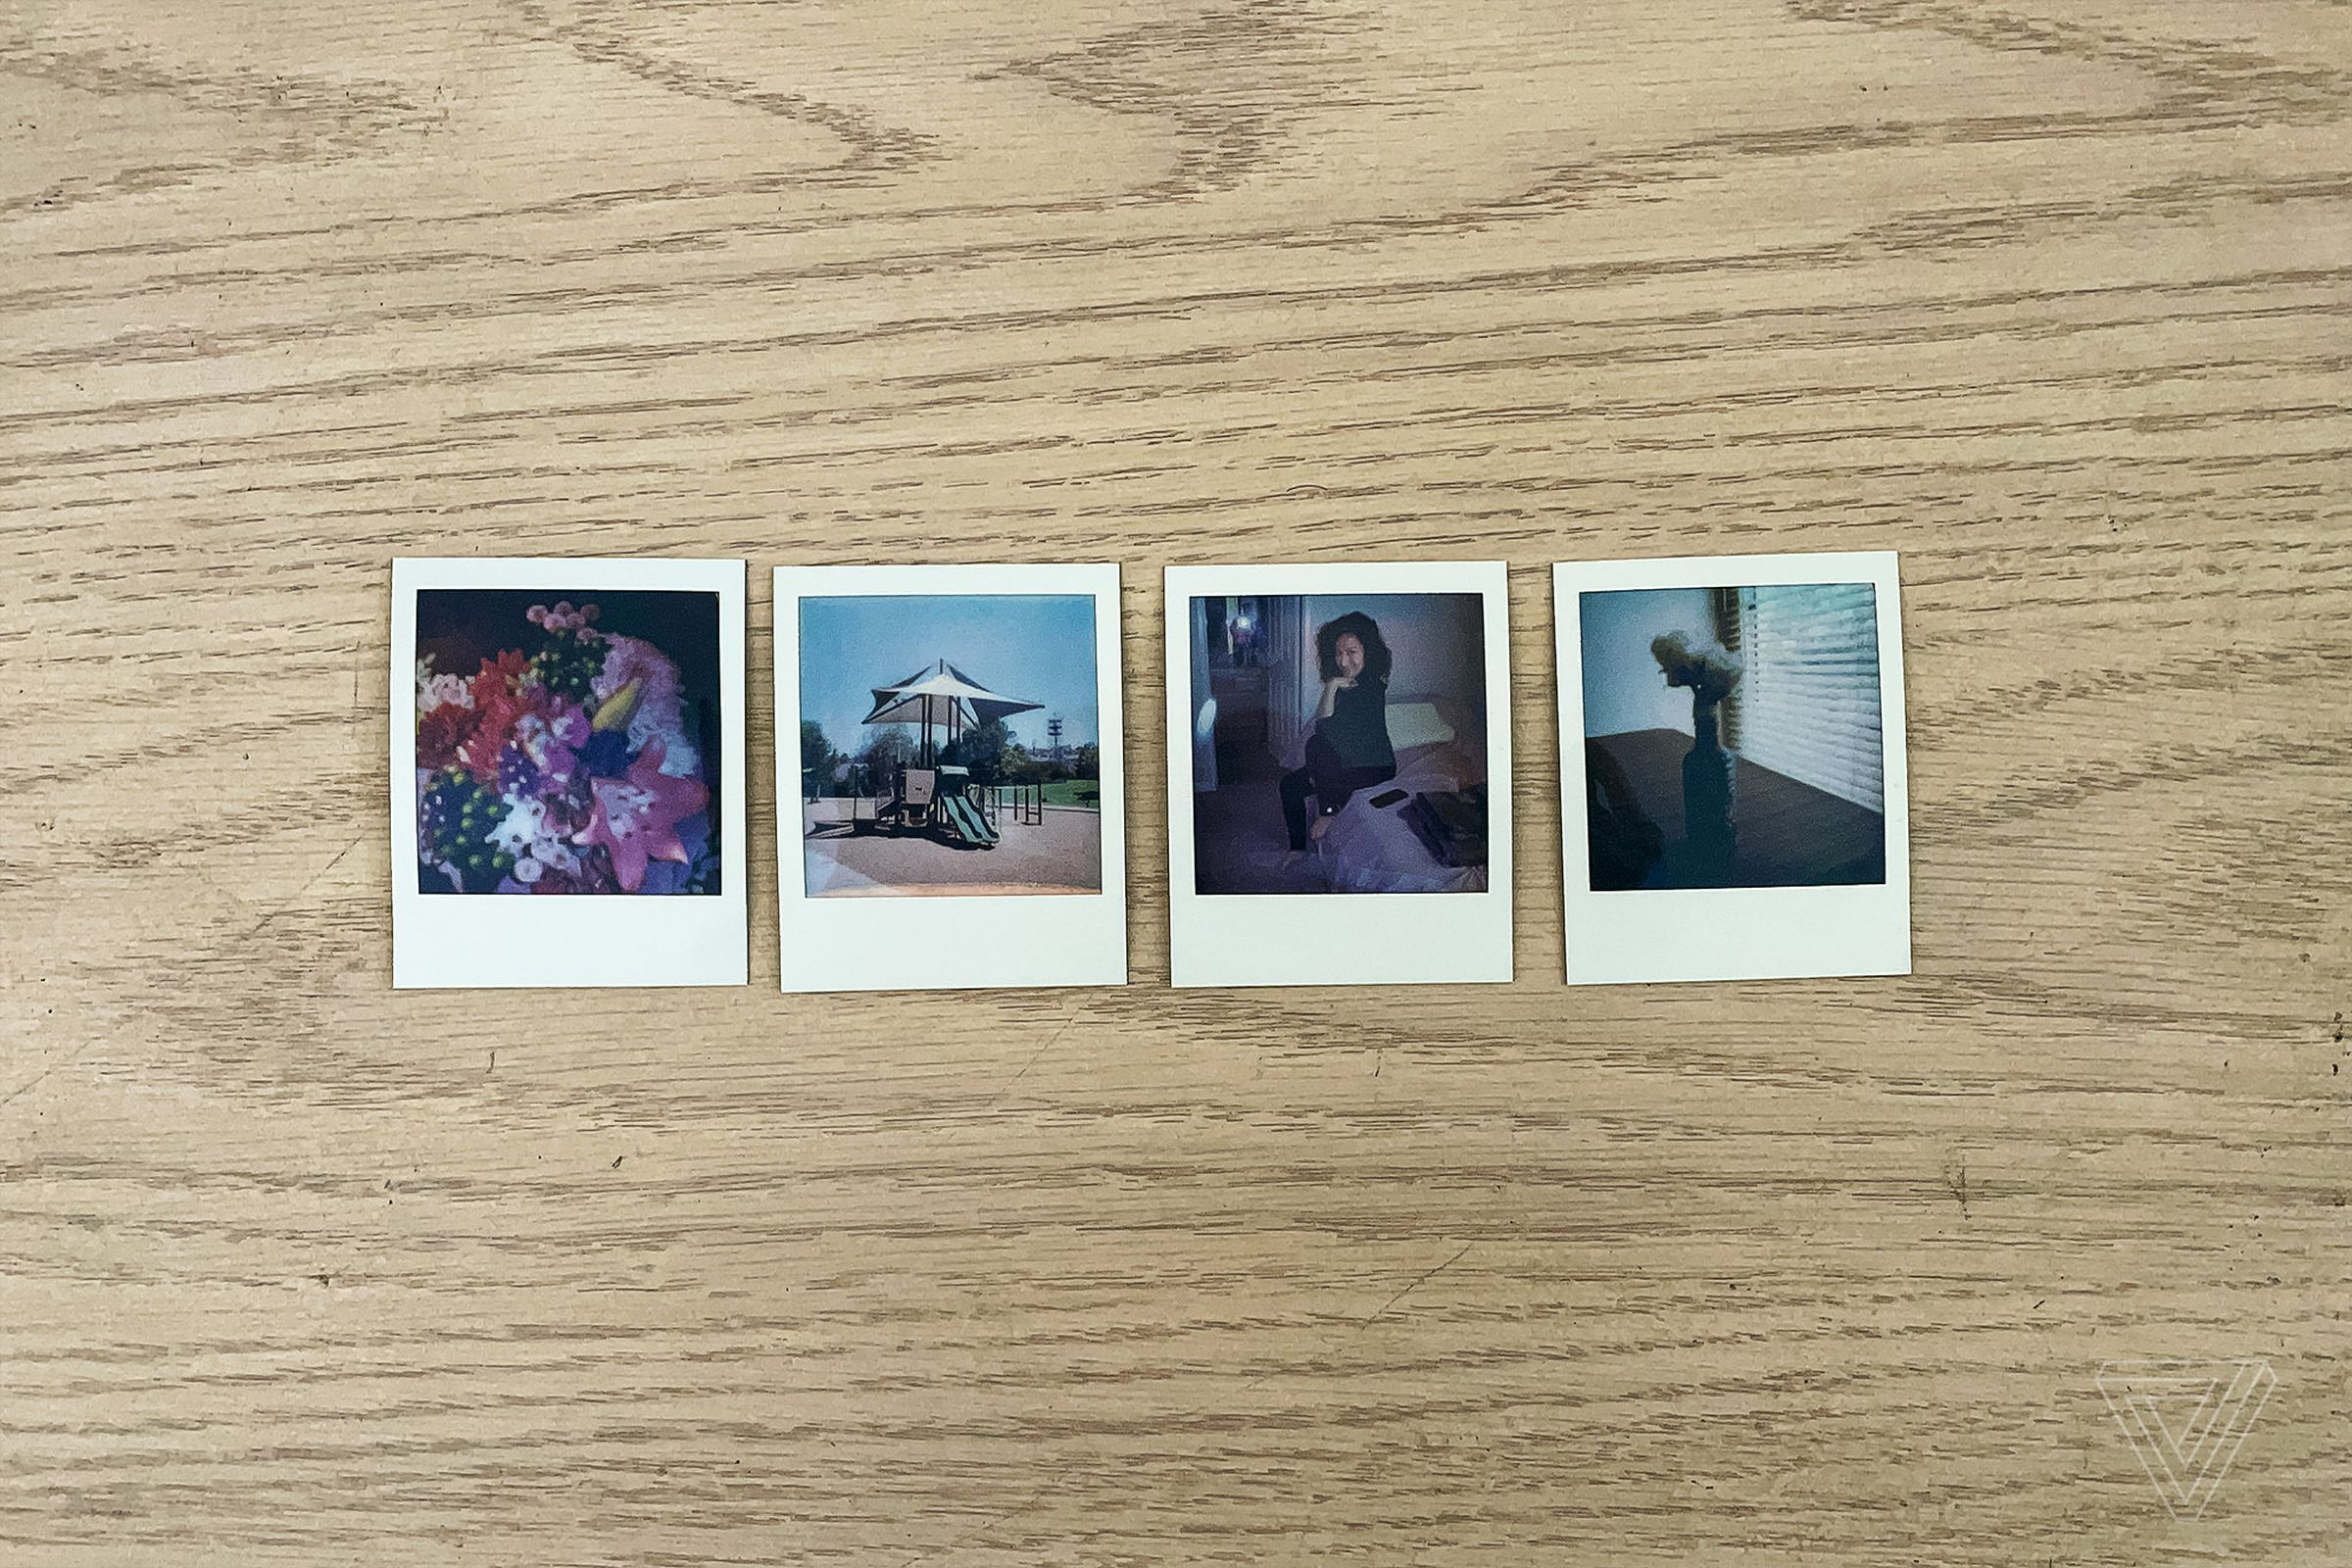 Four tiny photos produced by the Polaroid Go.